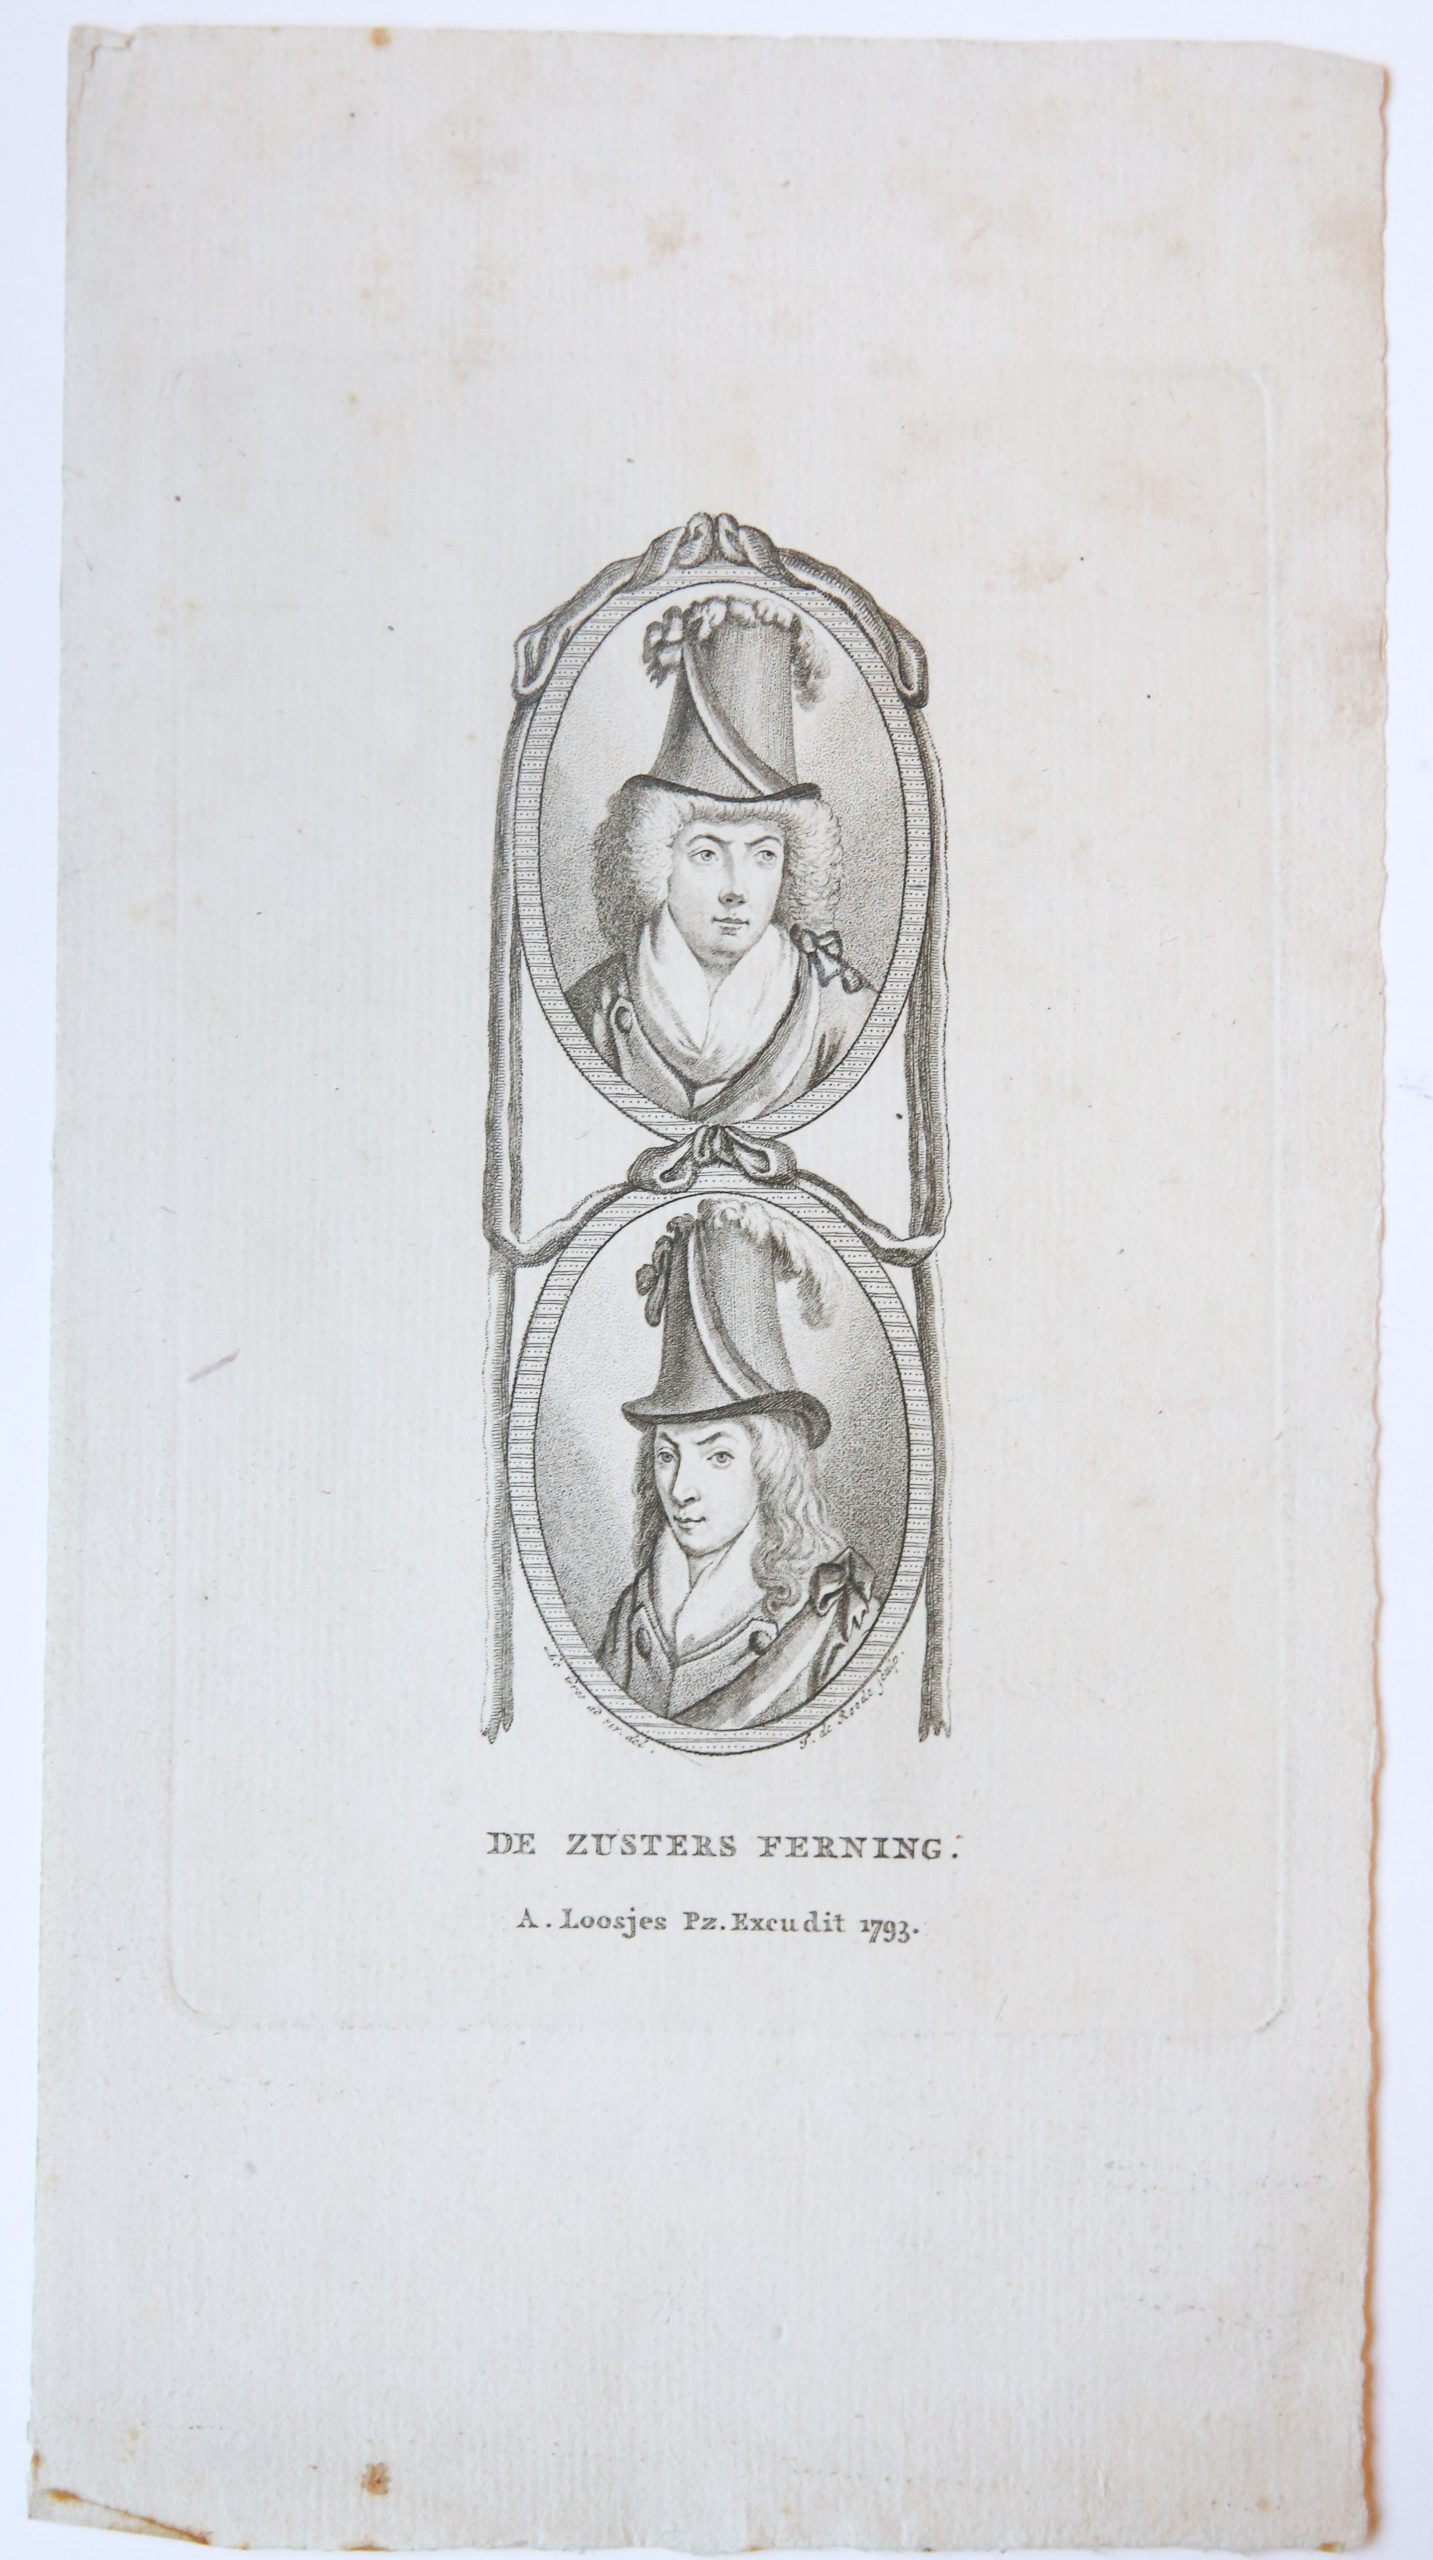 Roode, F. de - Portretprent in stippelgravure-techniek van 'De zusters Ferning', gegraveerd door F. de Roode naar Le Gros. Uitg. A. Loosjes, 1793.